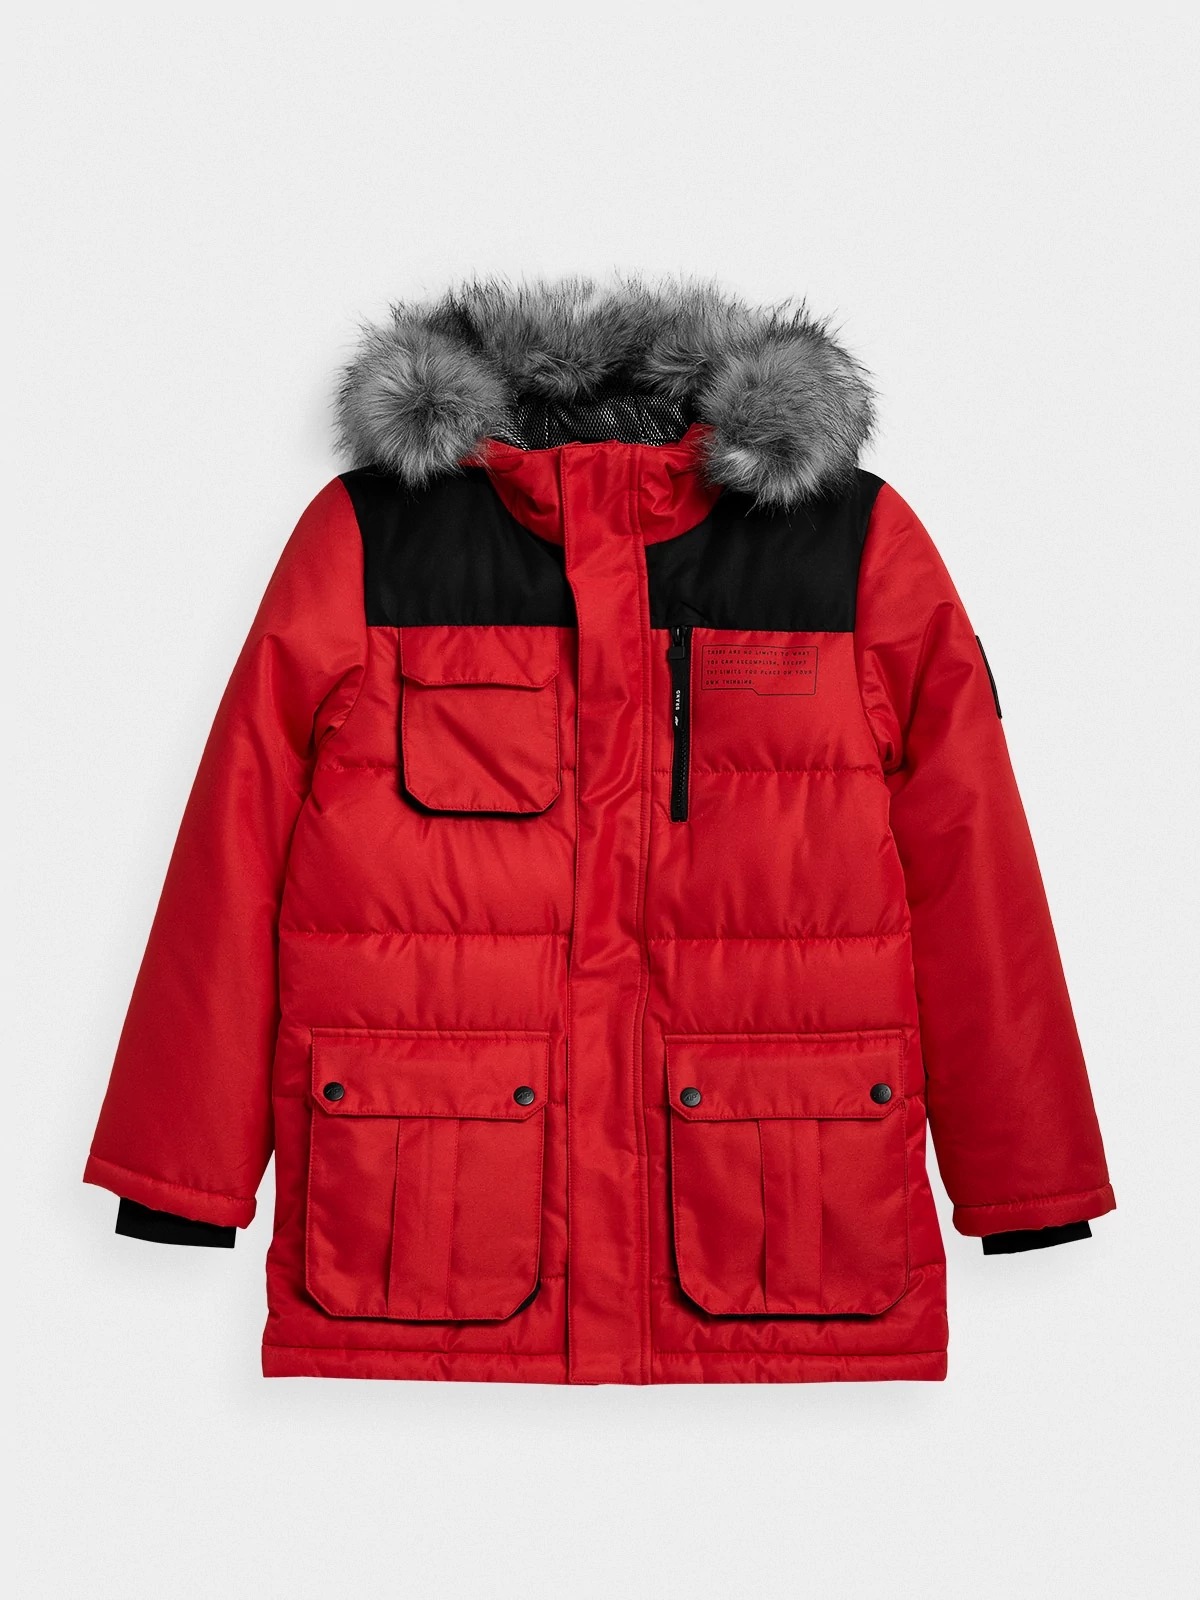 фото Куртка 4f boy's jackets hjz21-jkum001-62s цв.красный р. 122